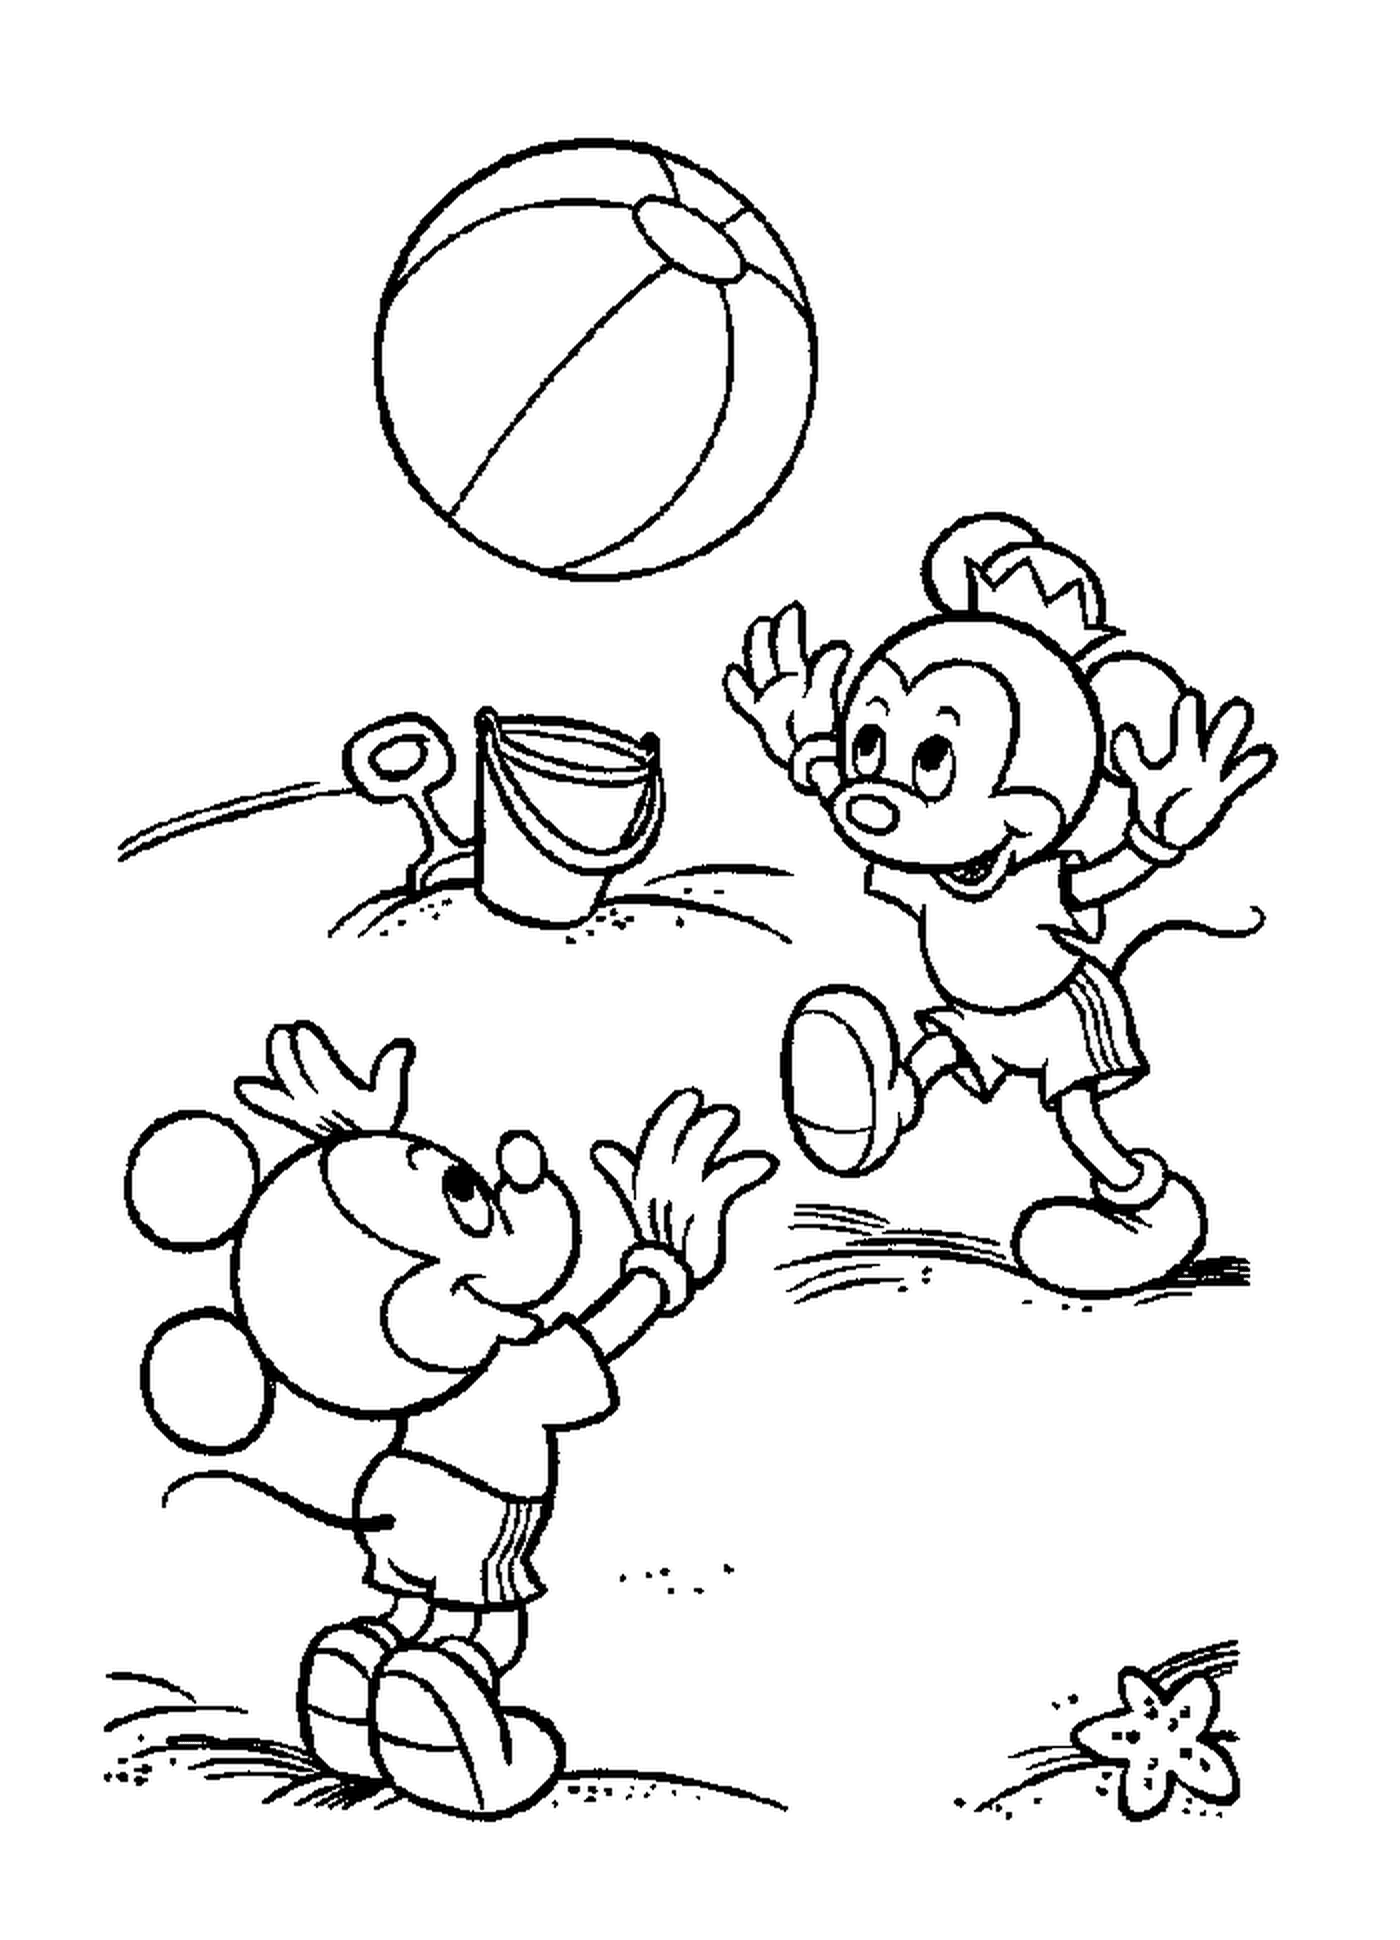   Les enfants de Mickey à la plage : Mickey Mouse jouant au ballon 